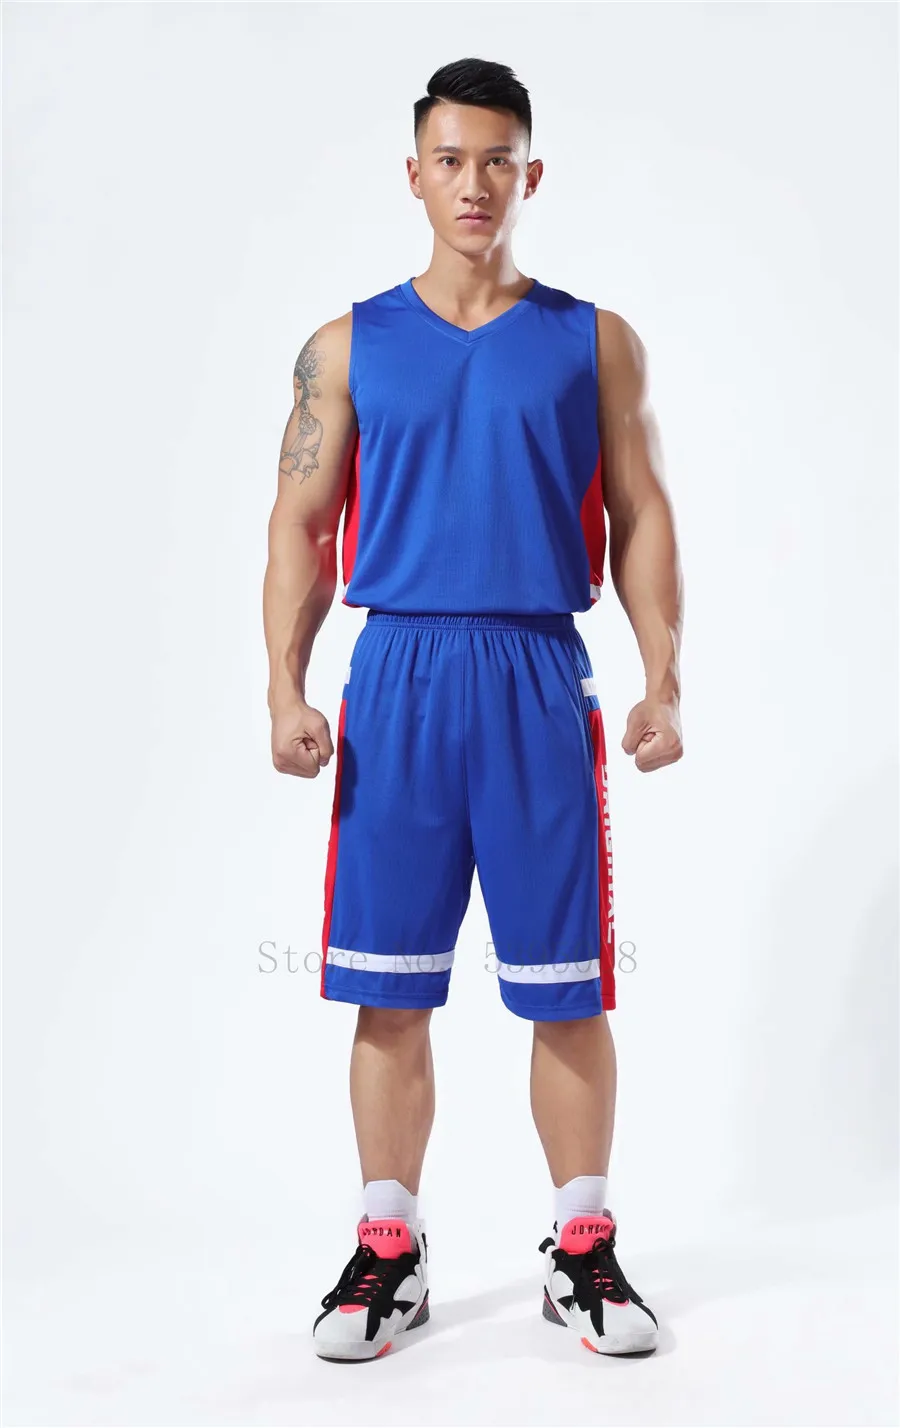 Баскетбольная форма Мужские Молодежные спортивные костюмы дышащие быстросохнущие дешевые баскетбольные майки для колледжа набор для бега зеленый красный